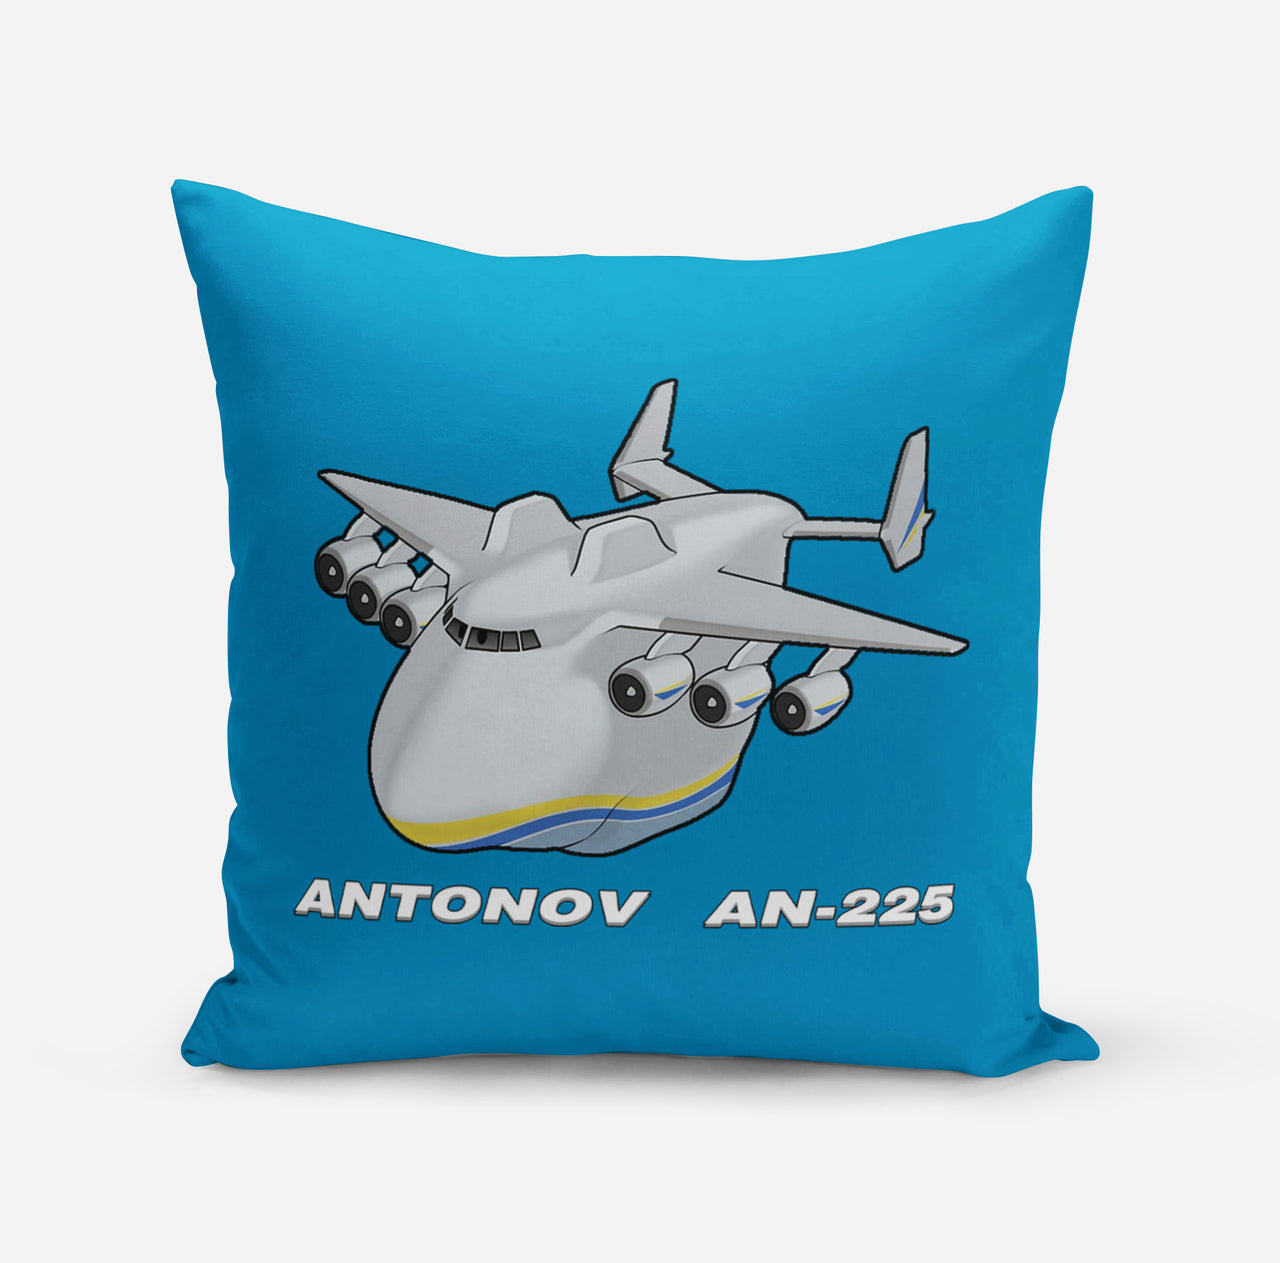 Antonov AN-225 (29) Designed Pillows